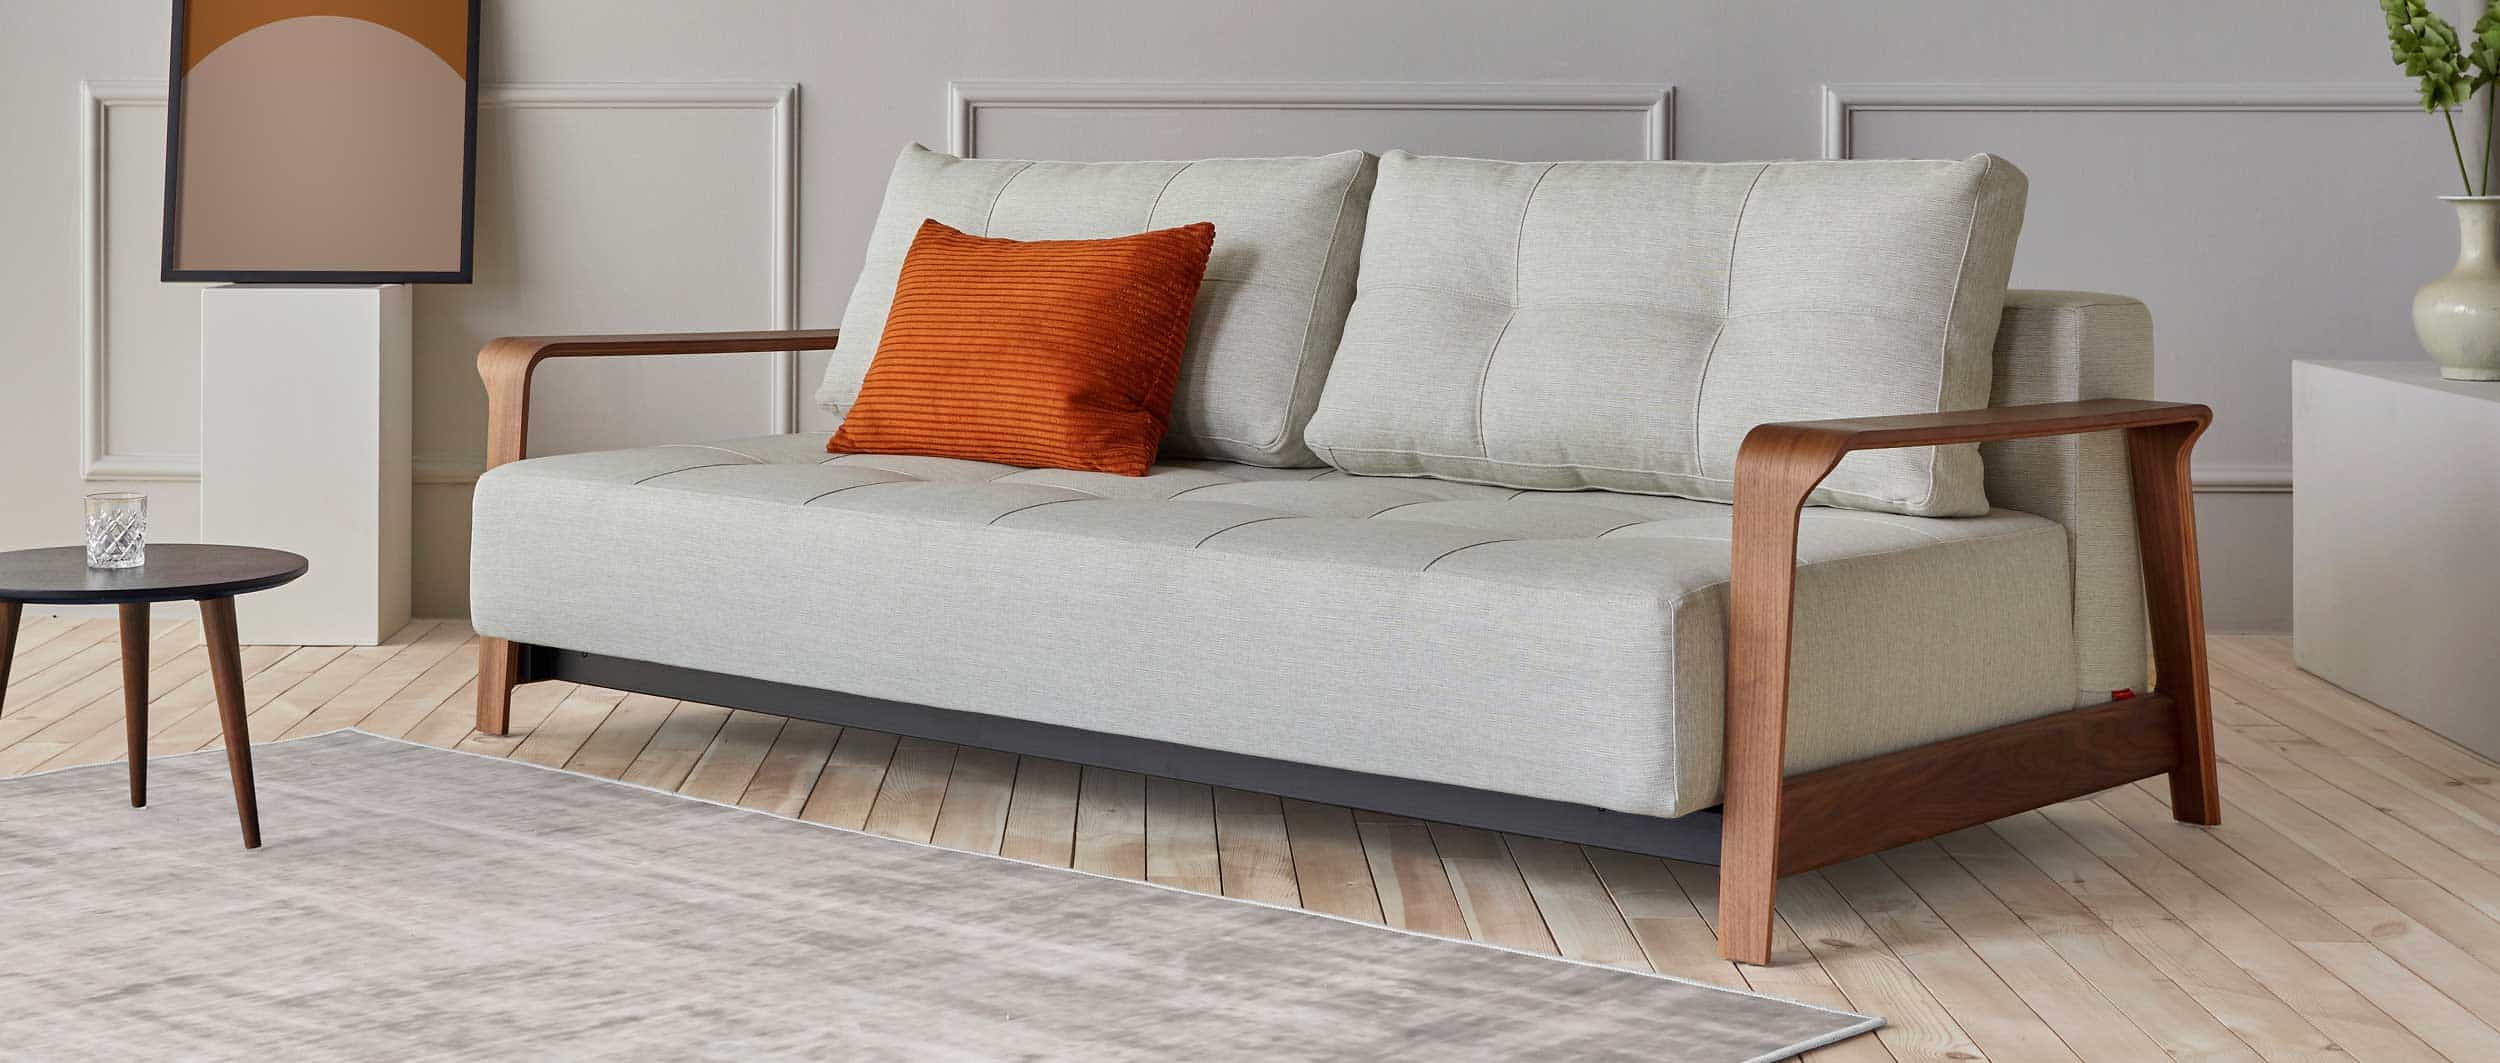 RAN DELUXE Schlafsofa von Innovation mit Holzarmlehnen dunkel, Lounge Sofa große Sitztiefe - Liegefläche 155x200